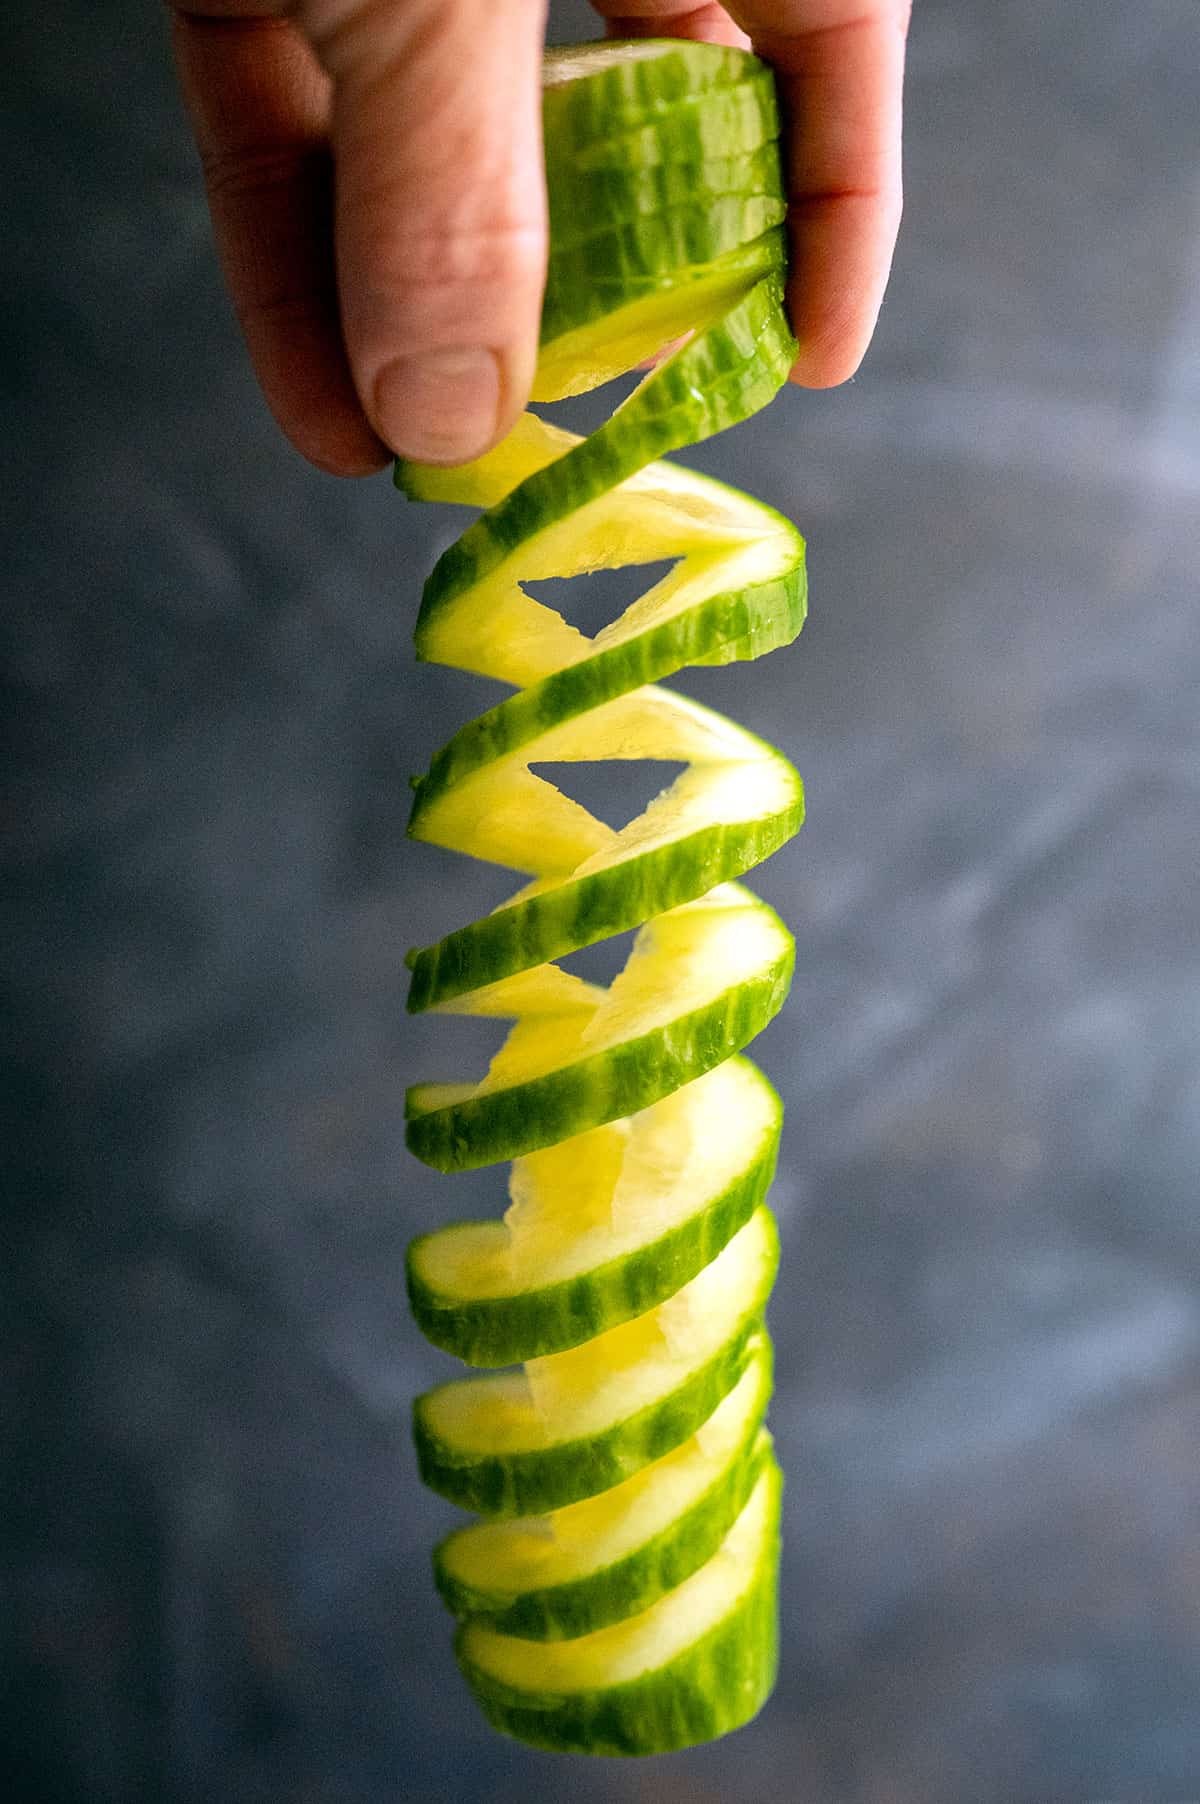 Spiral cut cucumber. 